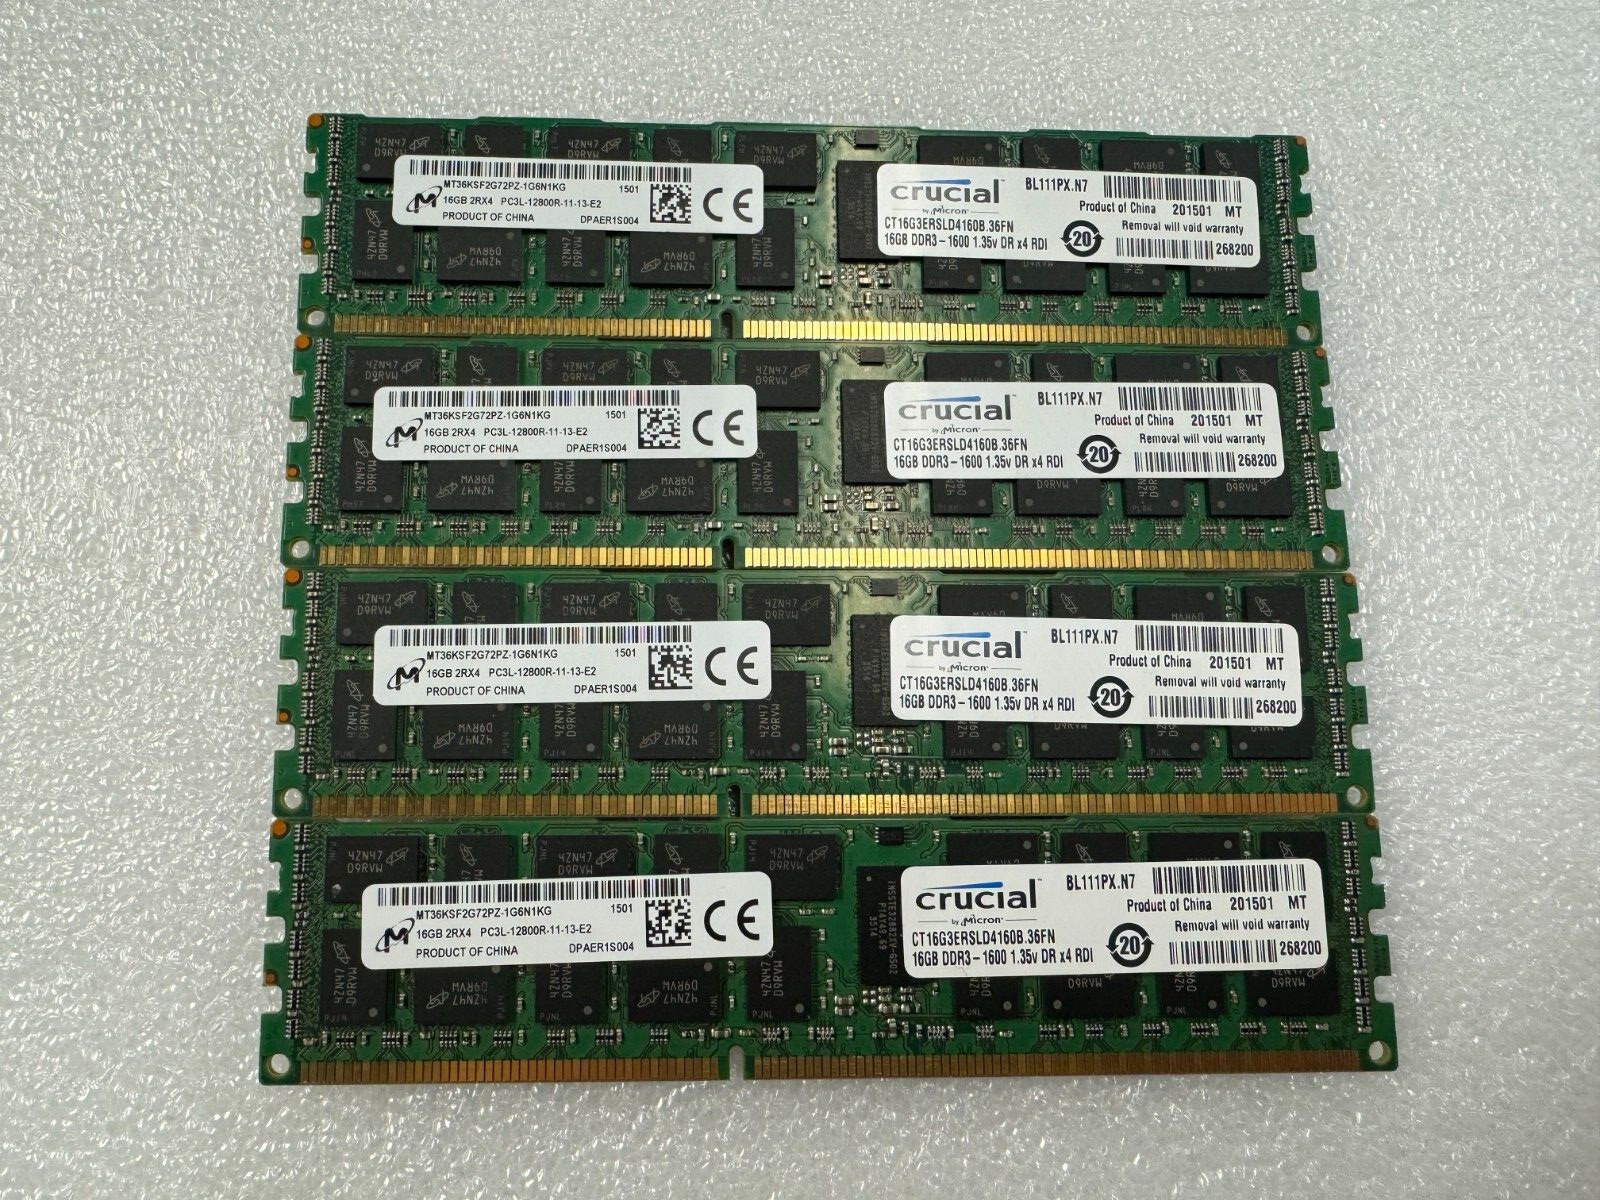 64GB (4x 16GB) Crucial CT16G3ERSLD4160B PC3L-12800R DDR3-1600MHz ECC Registered